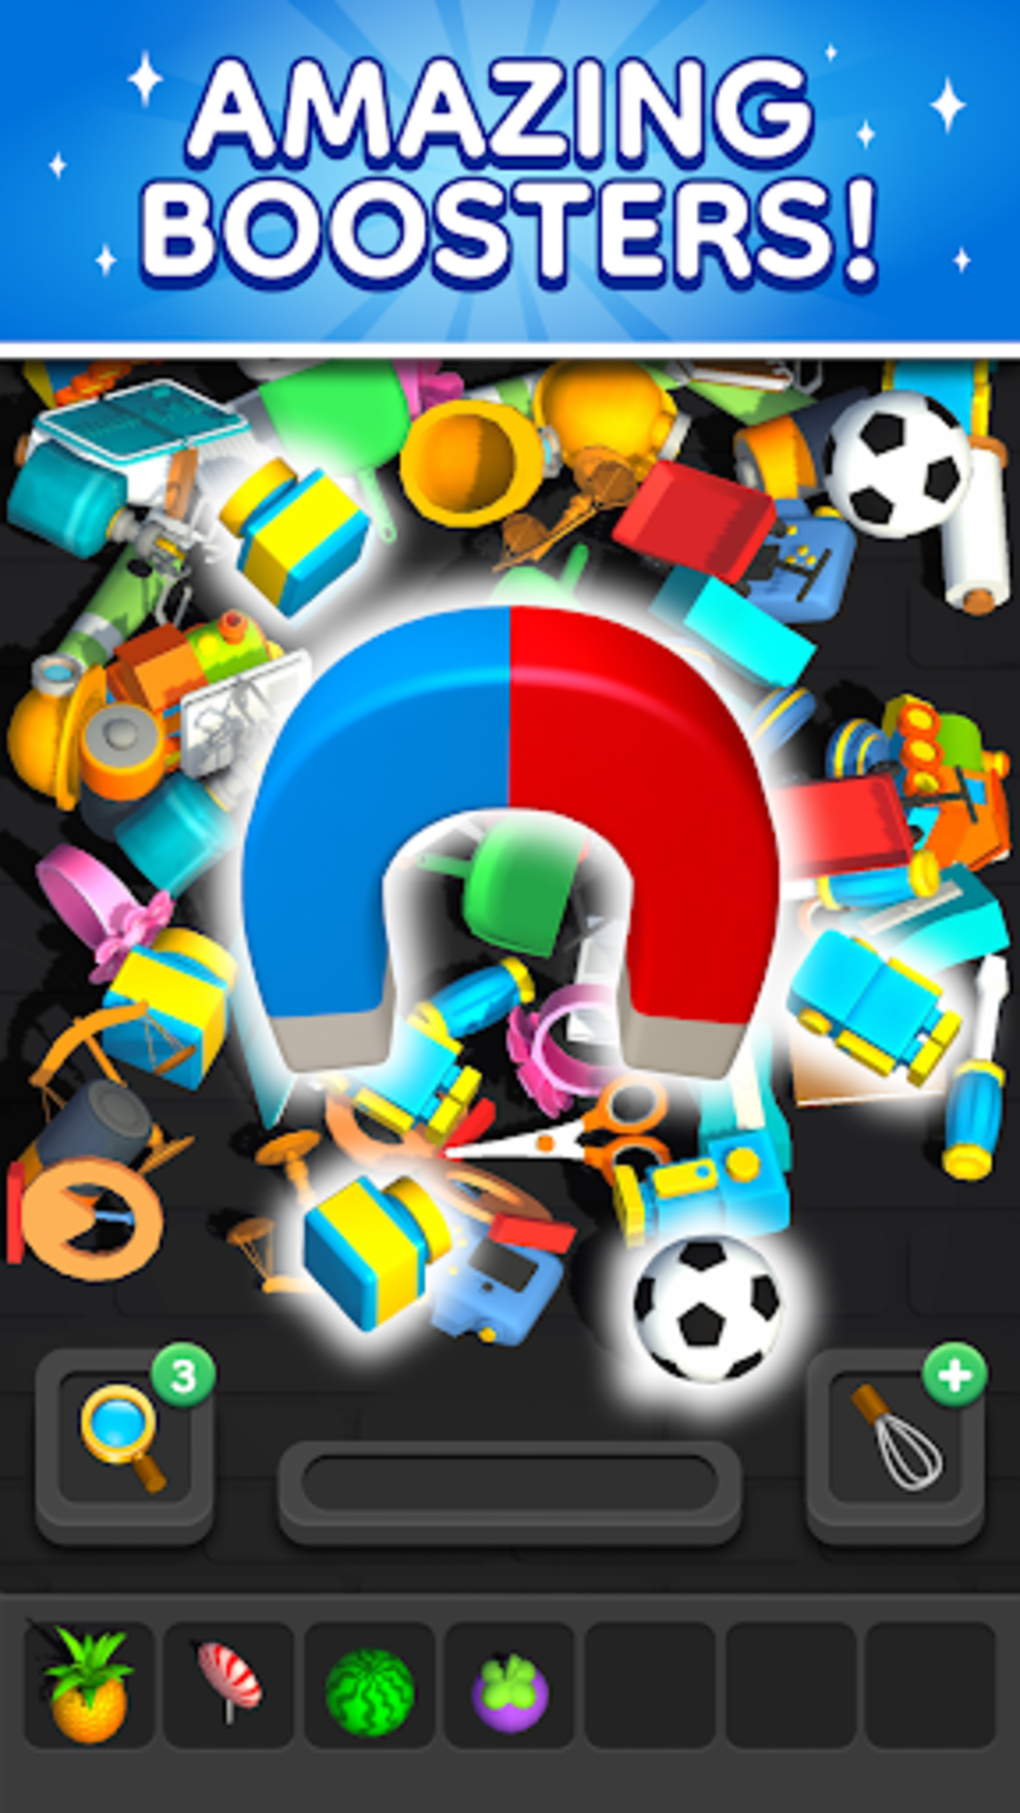 Match 3D - Jogo de combinação – Apps no Google Play